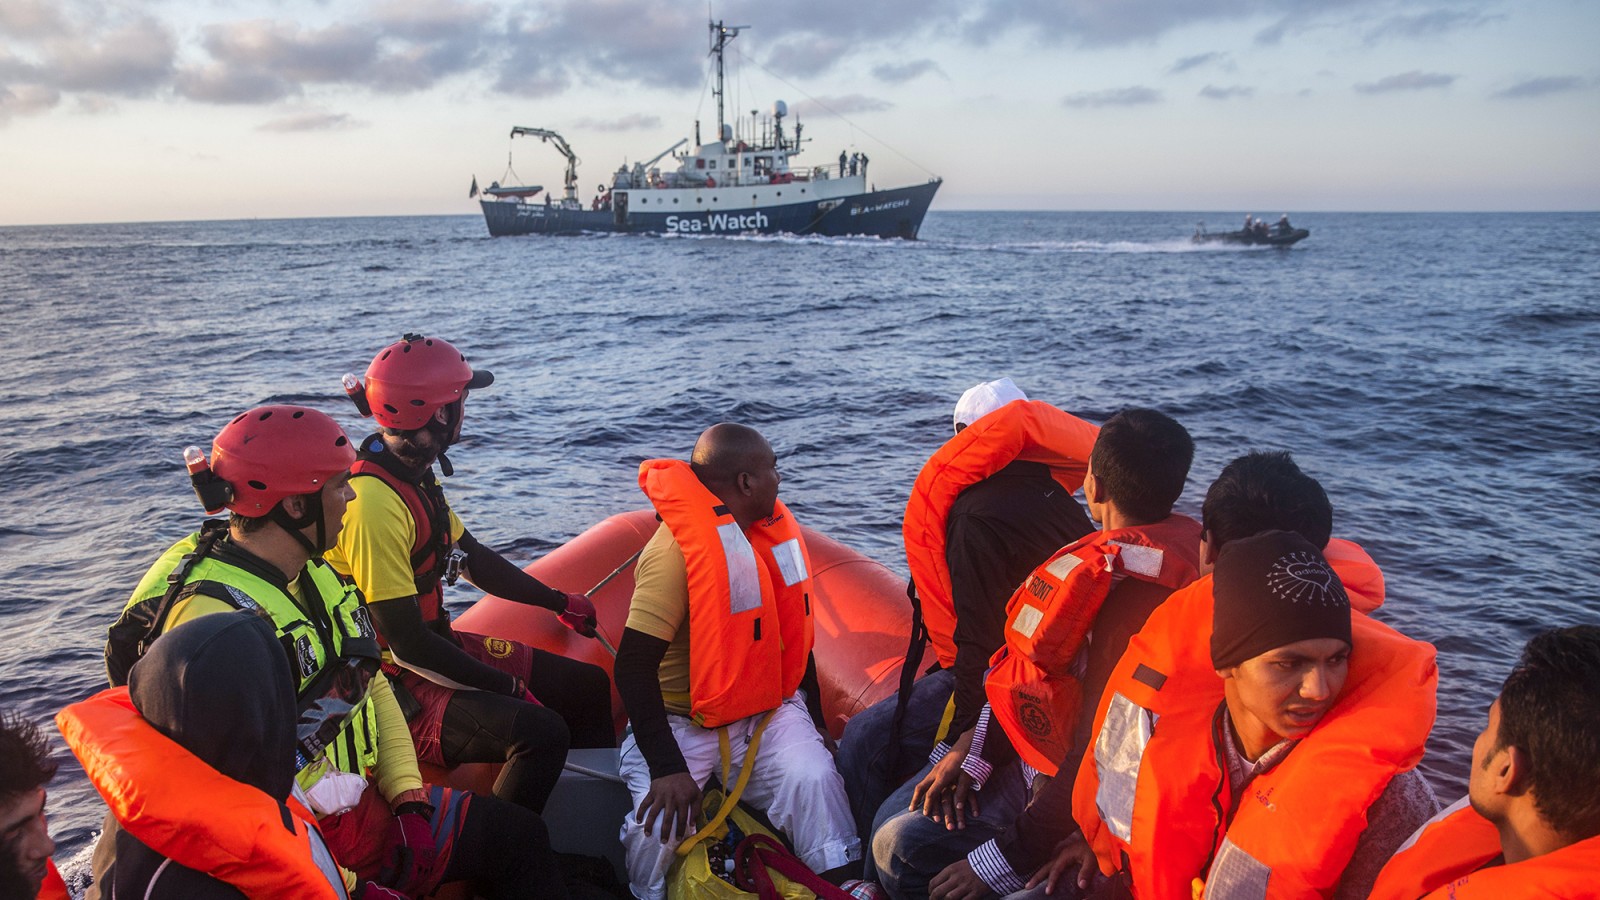 פליטים ומהגרים שניצלו מטביעת ספינתם בסמוך לחופי לוב במבצע לחילוצם. (תמונת ארכיון, למצולמים אין קשר לכתבה. צילום: סוכנות AP)